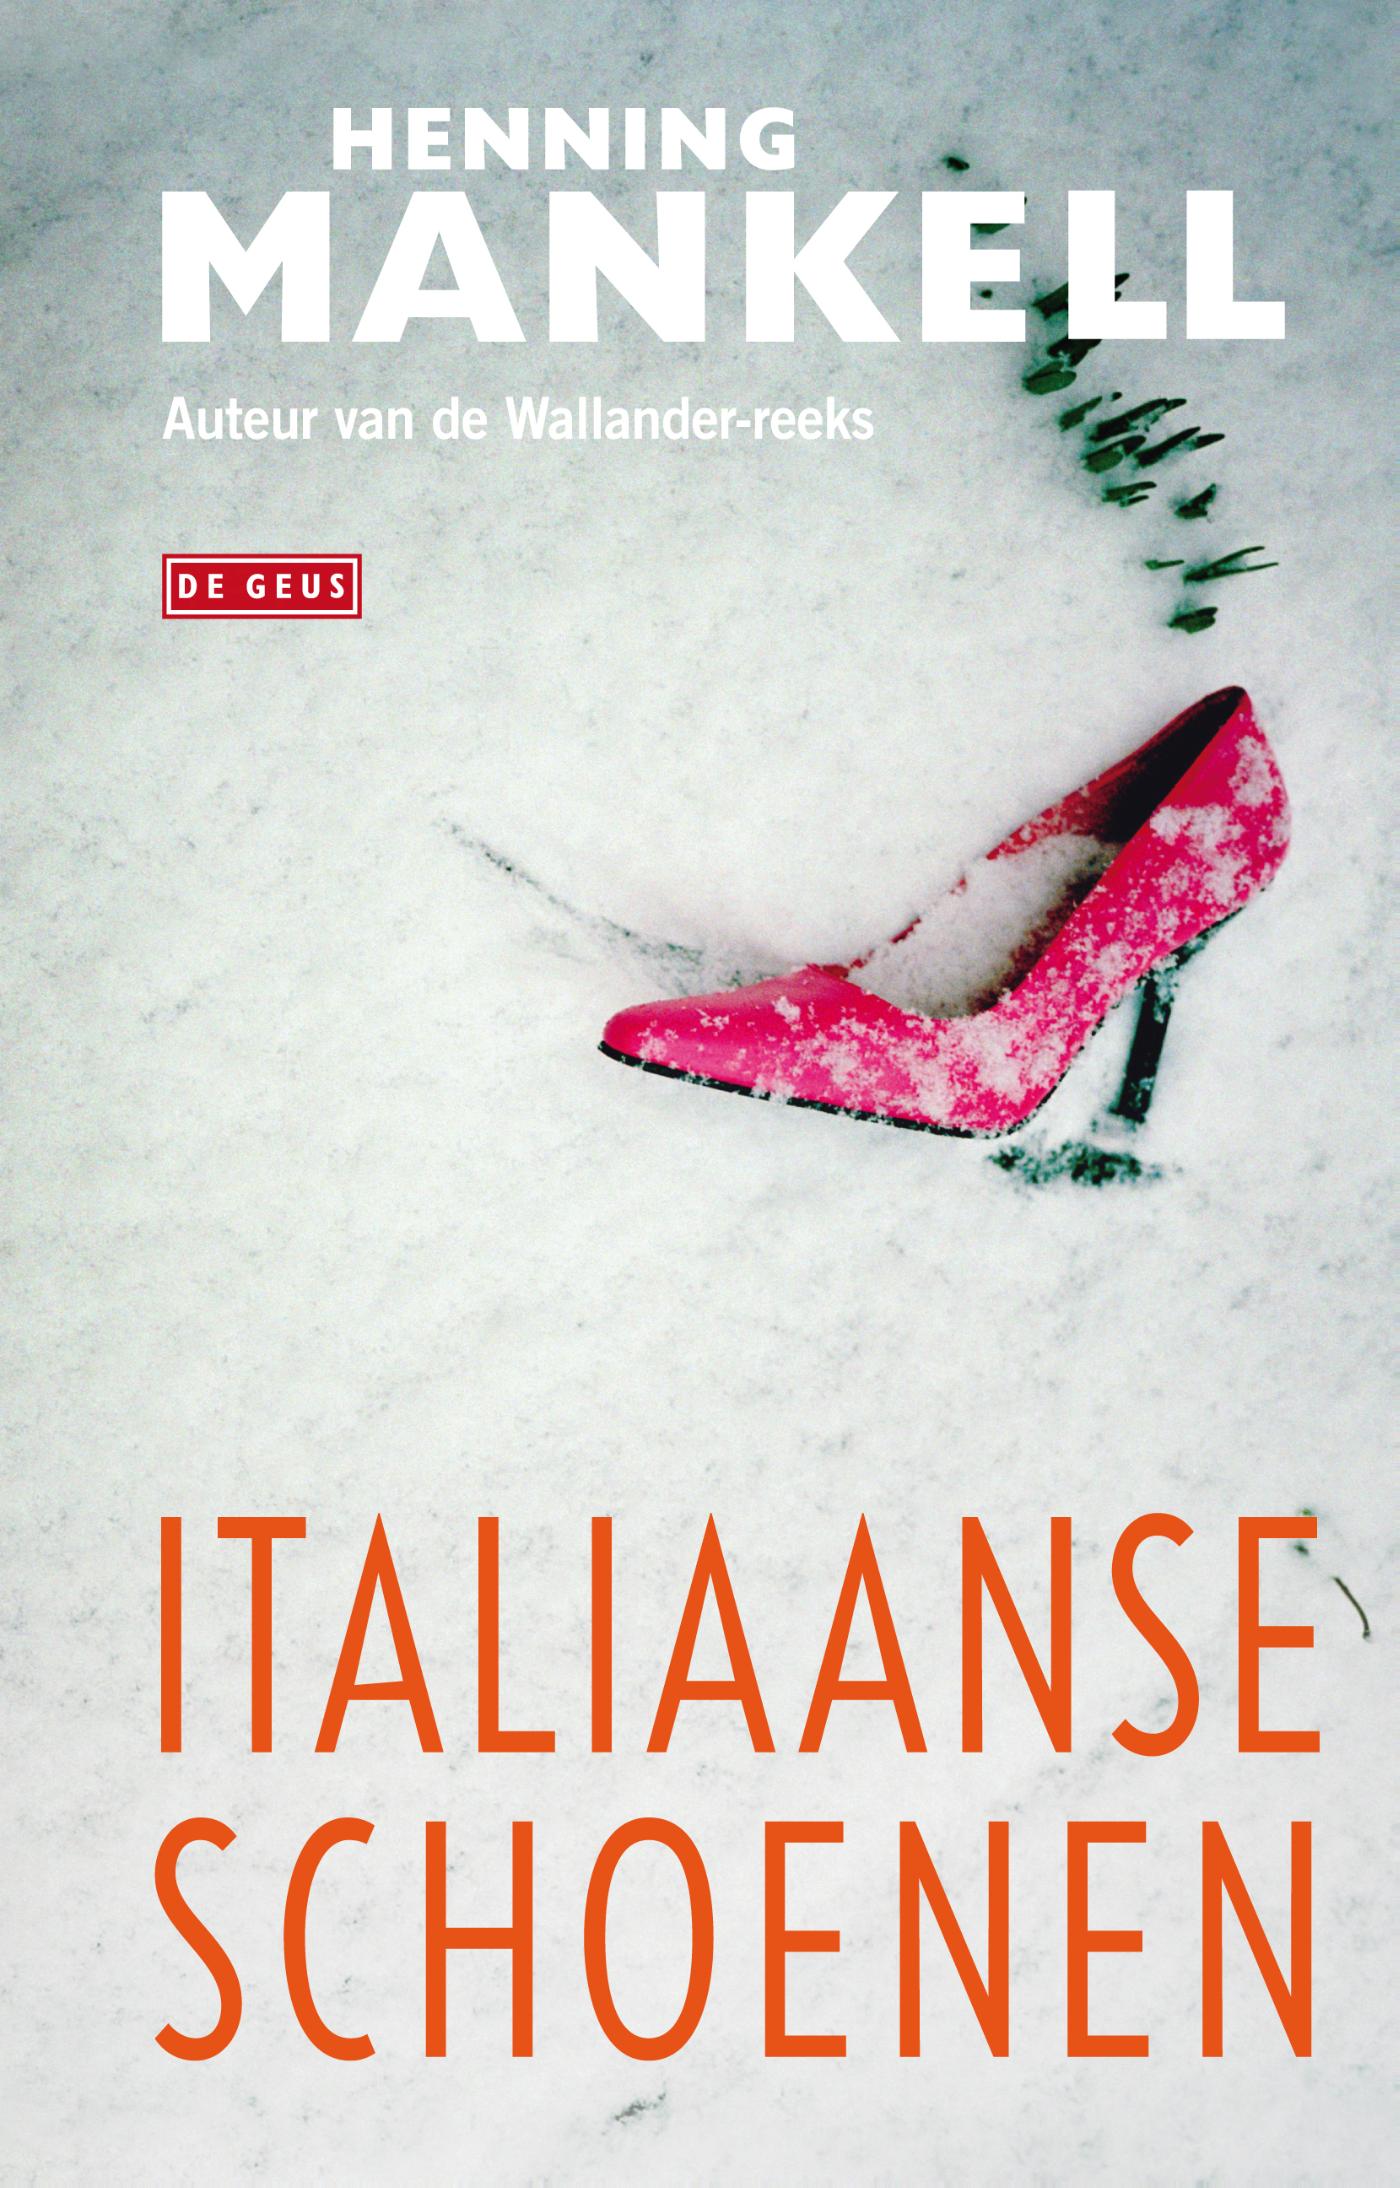 Italiaanse schoenen (Ebook)